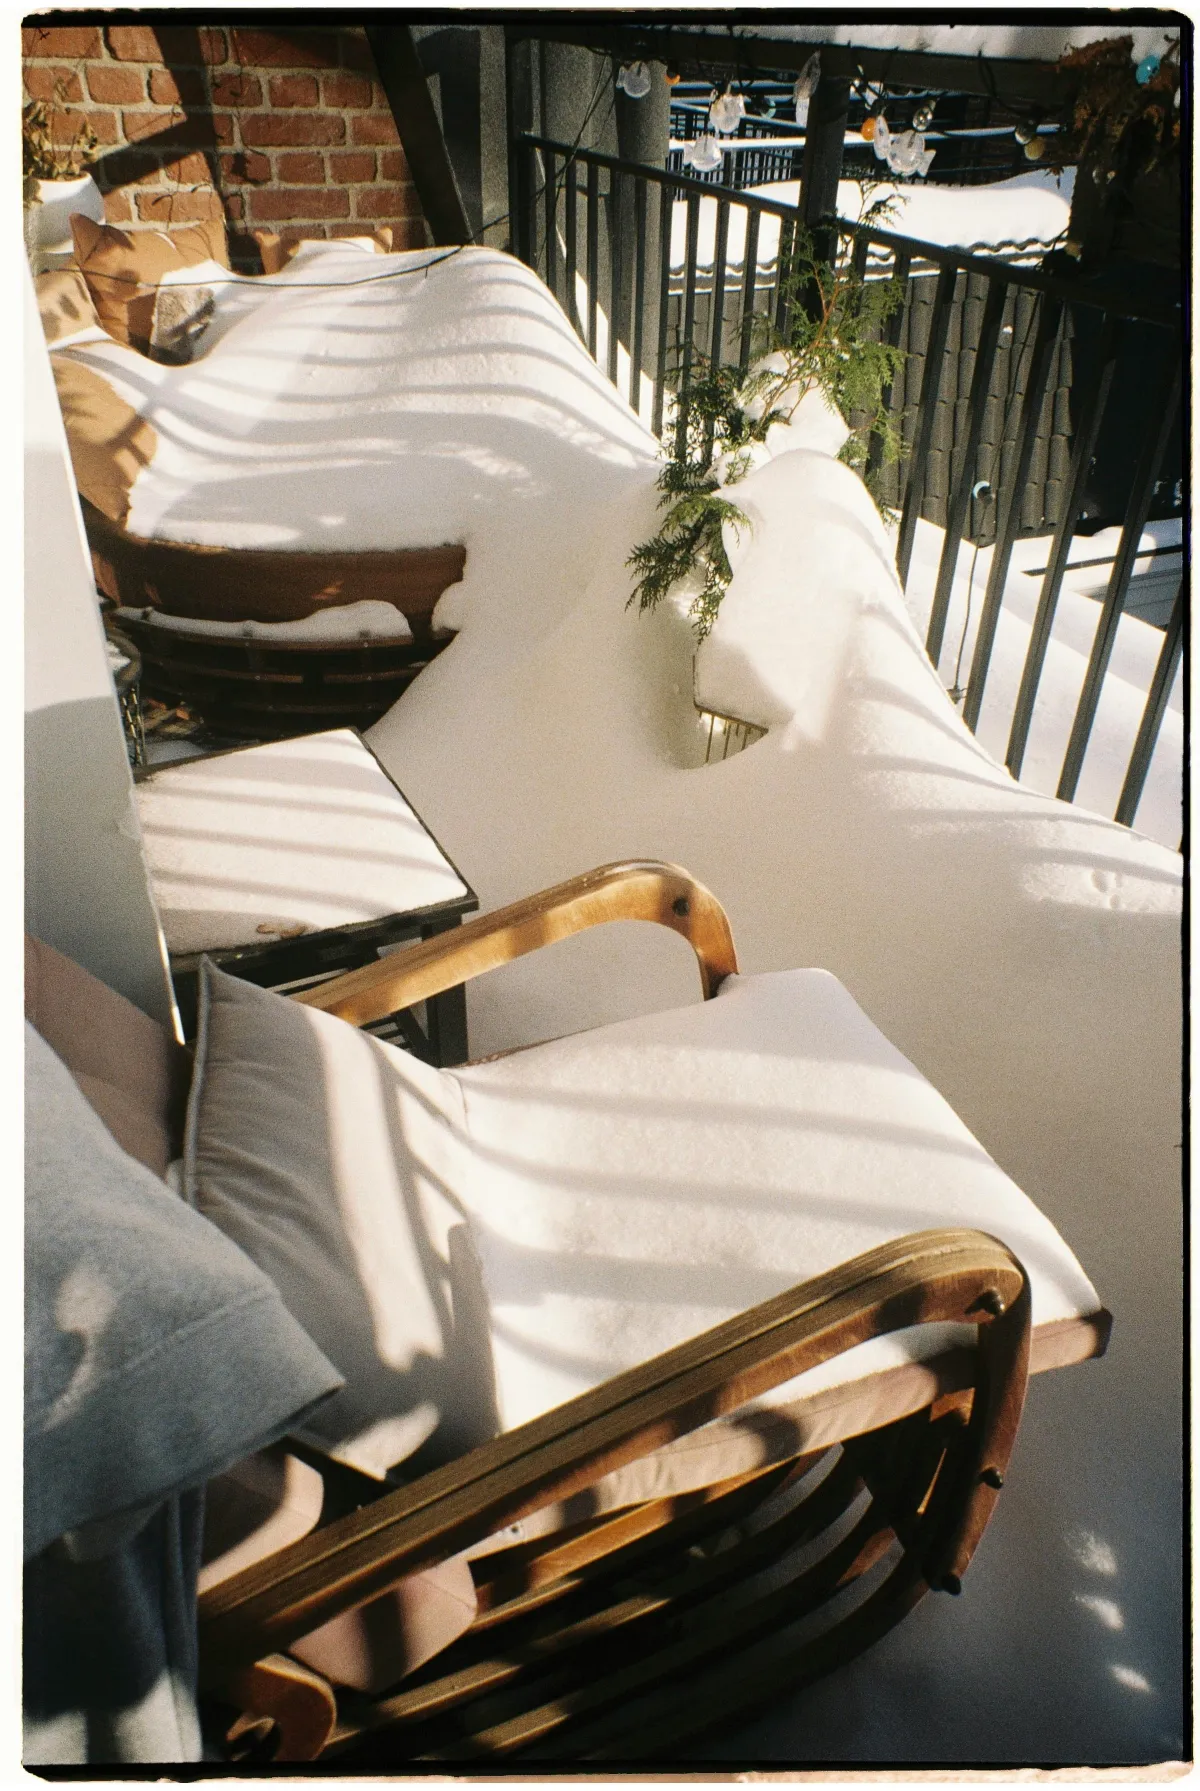 meubles en bois sur terrasse recouverts de neige